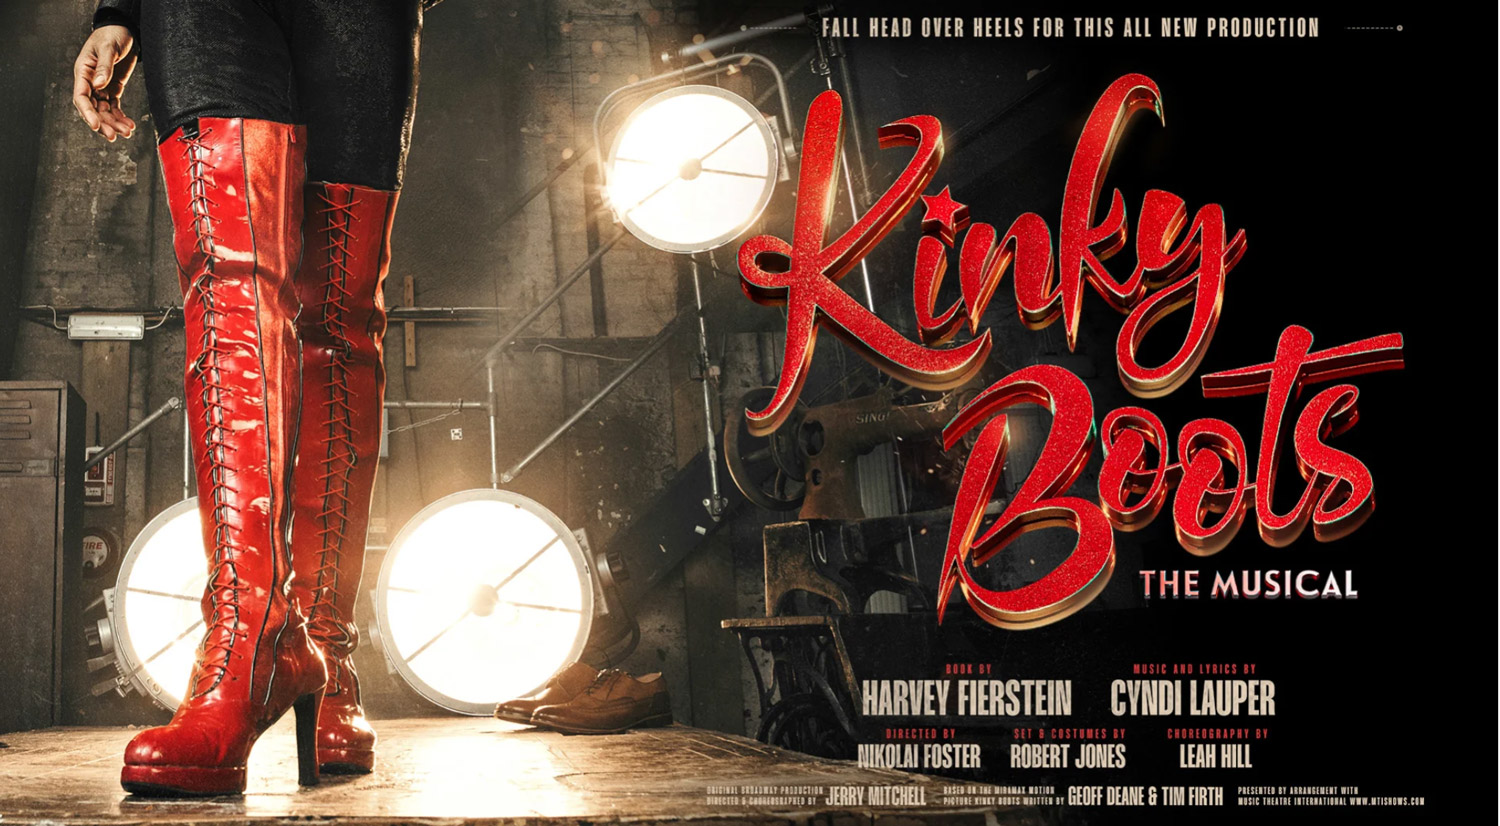 Kinky Boots UK Tour